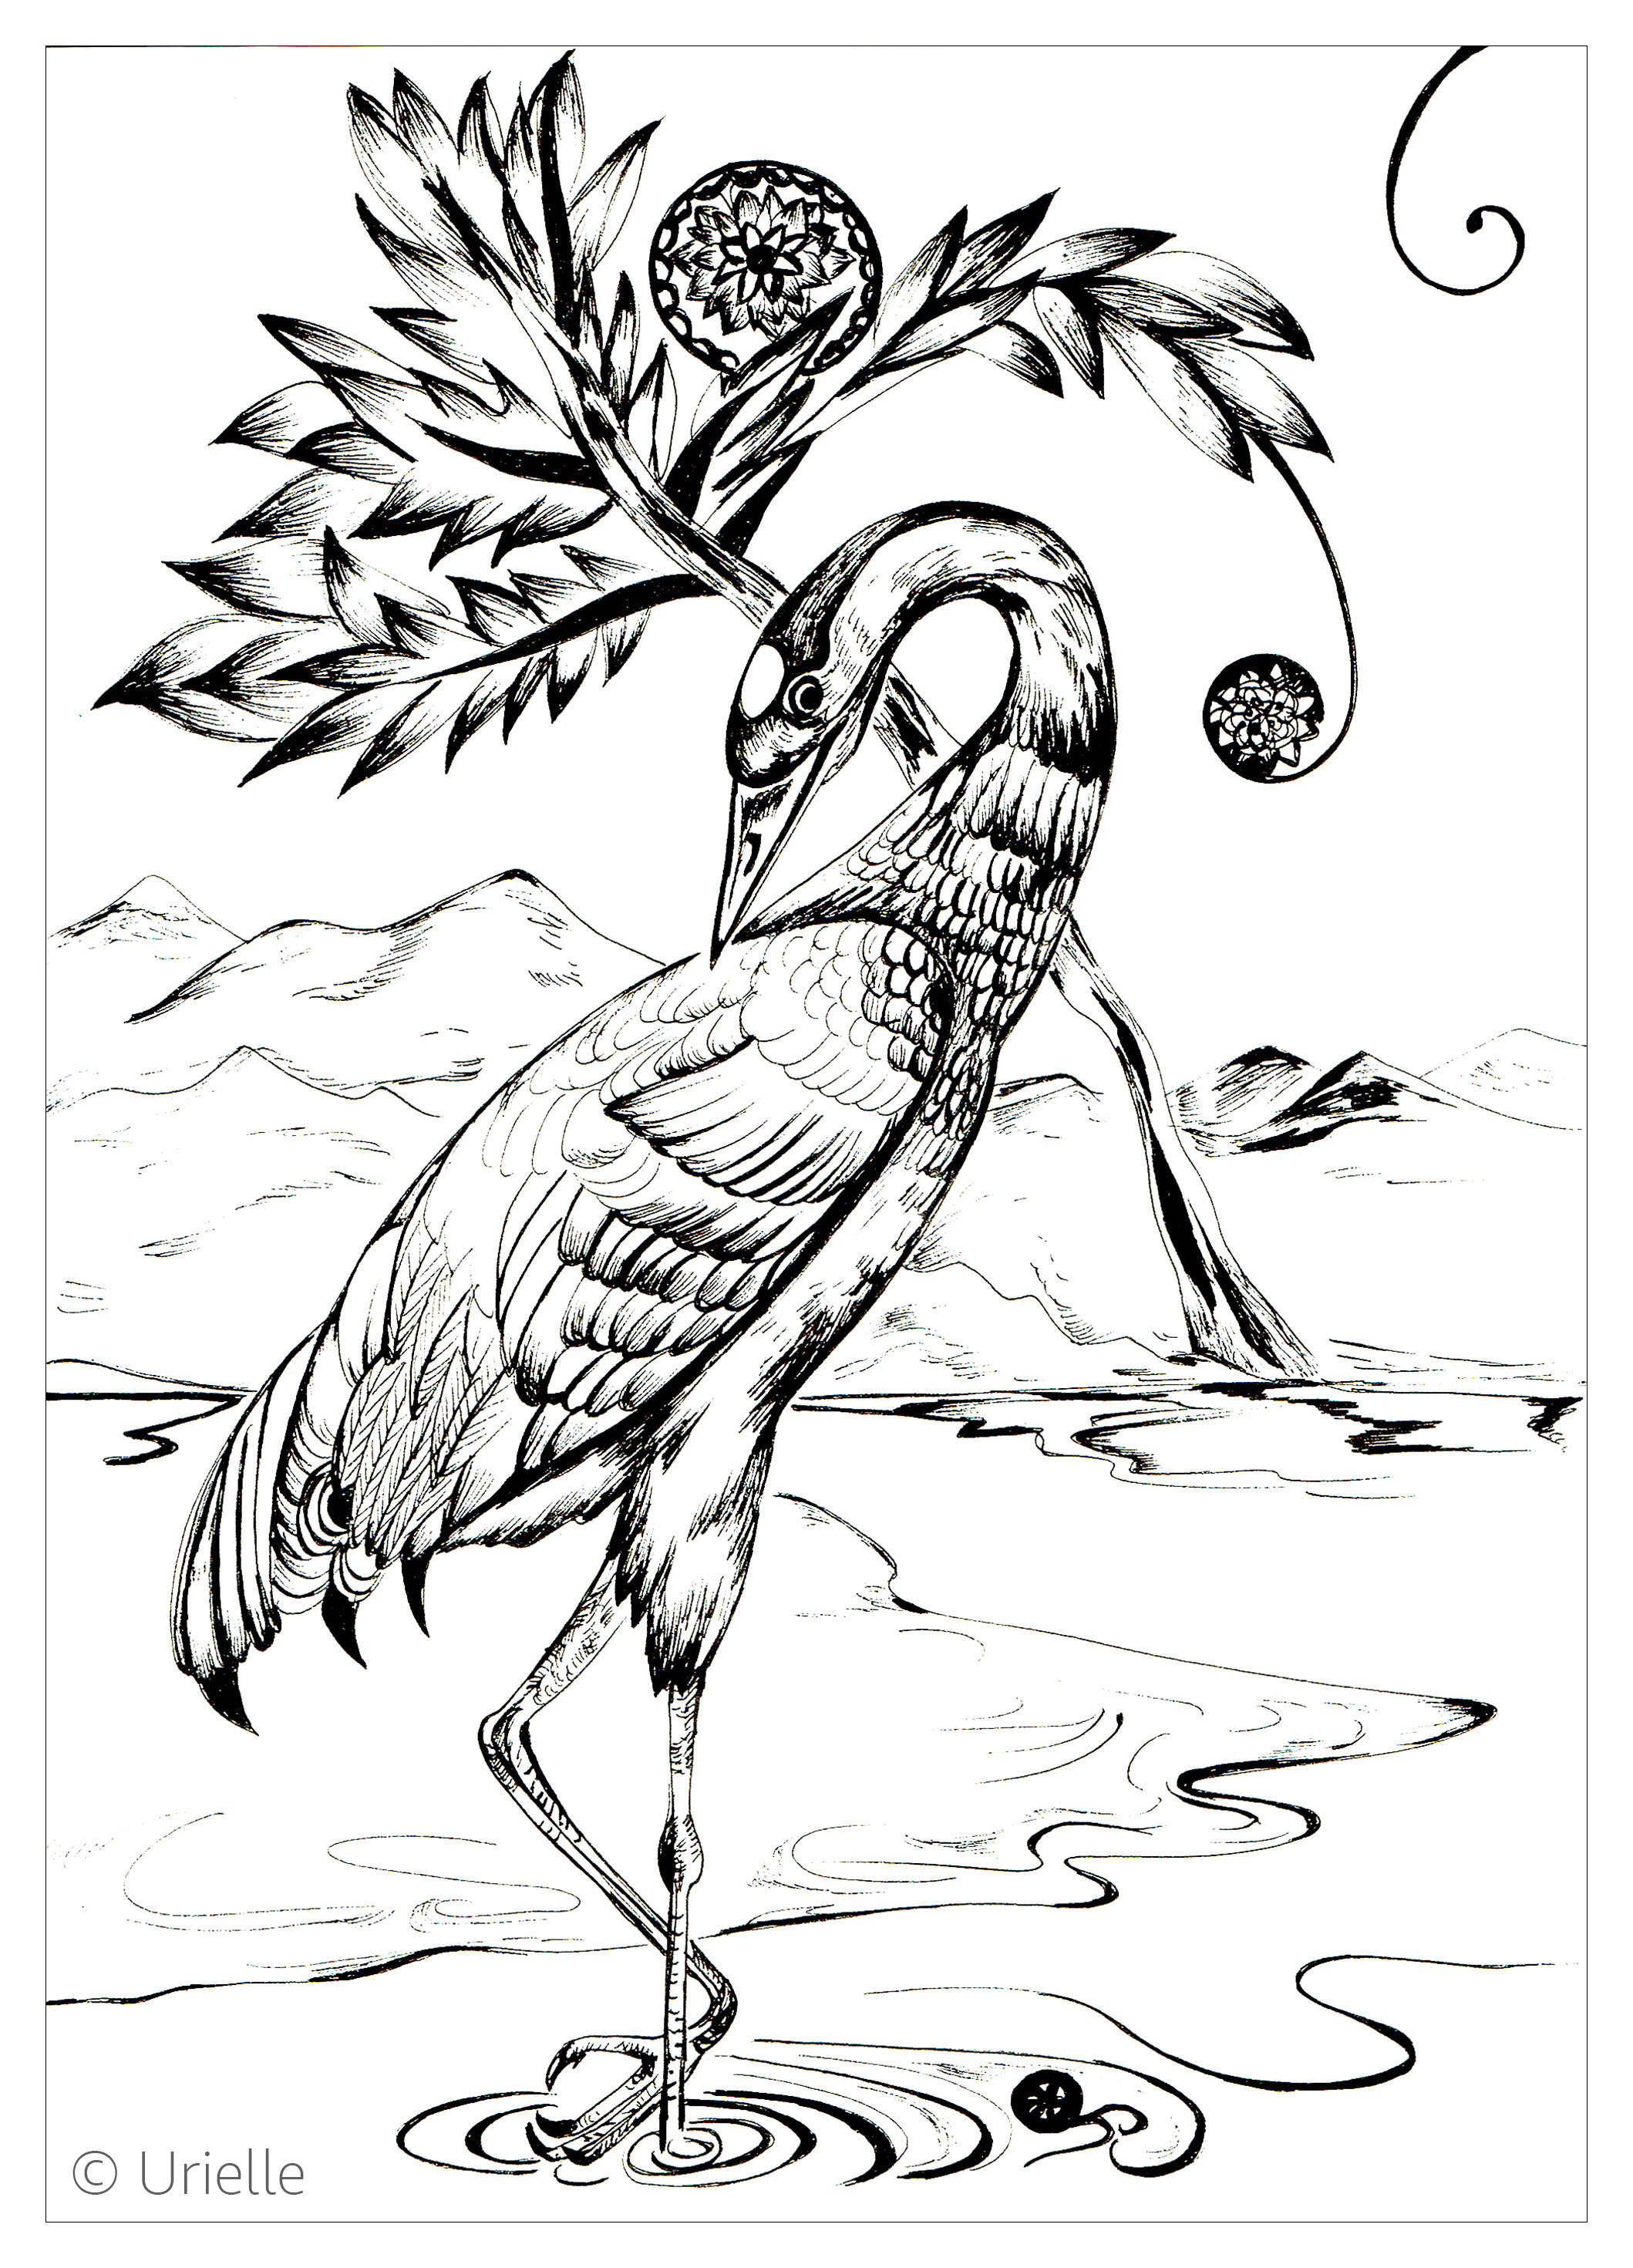 Heron, Artist : Urielle